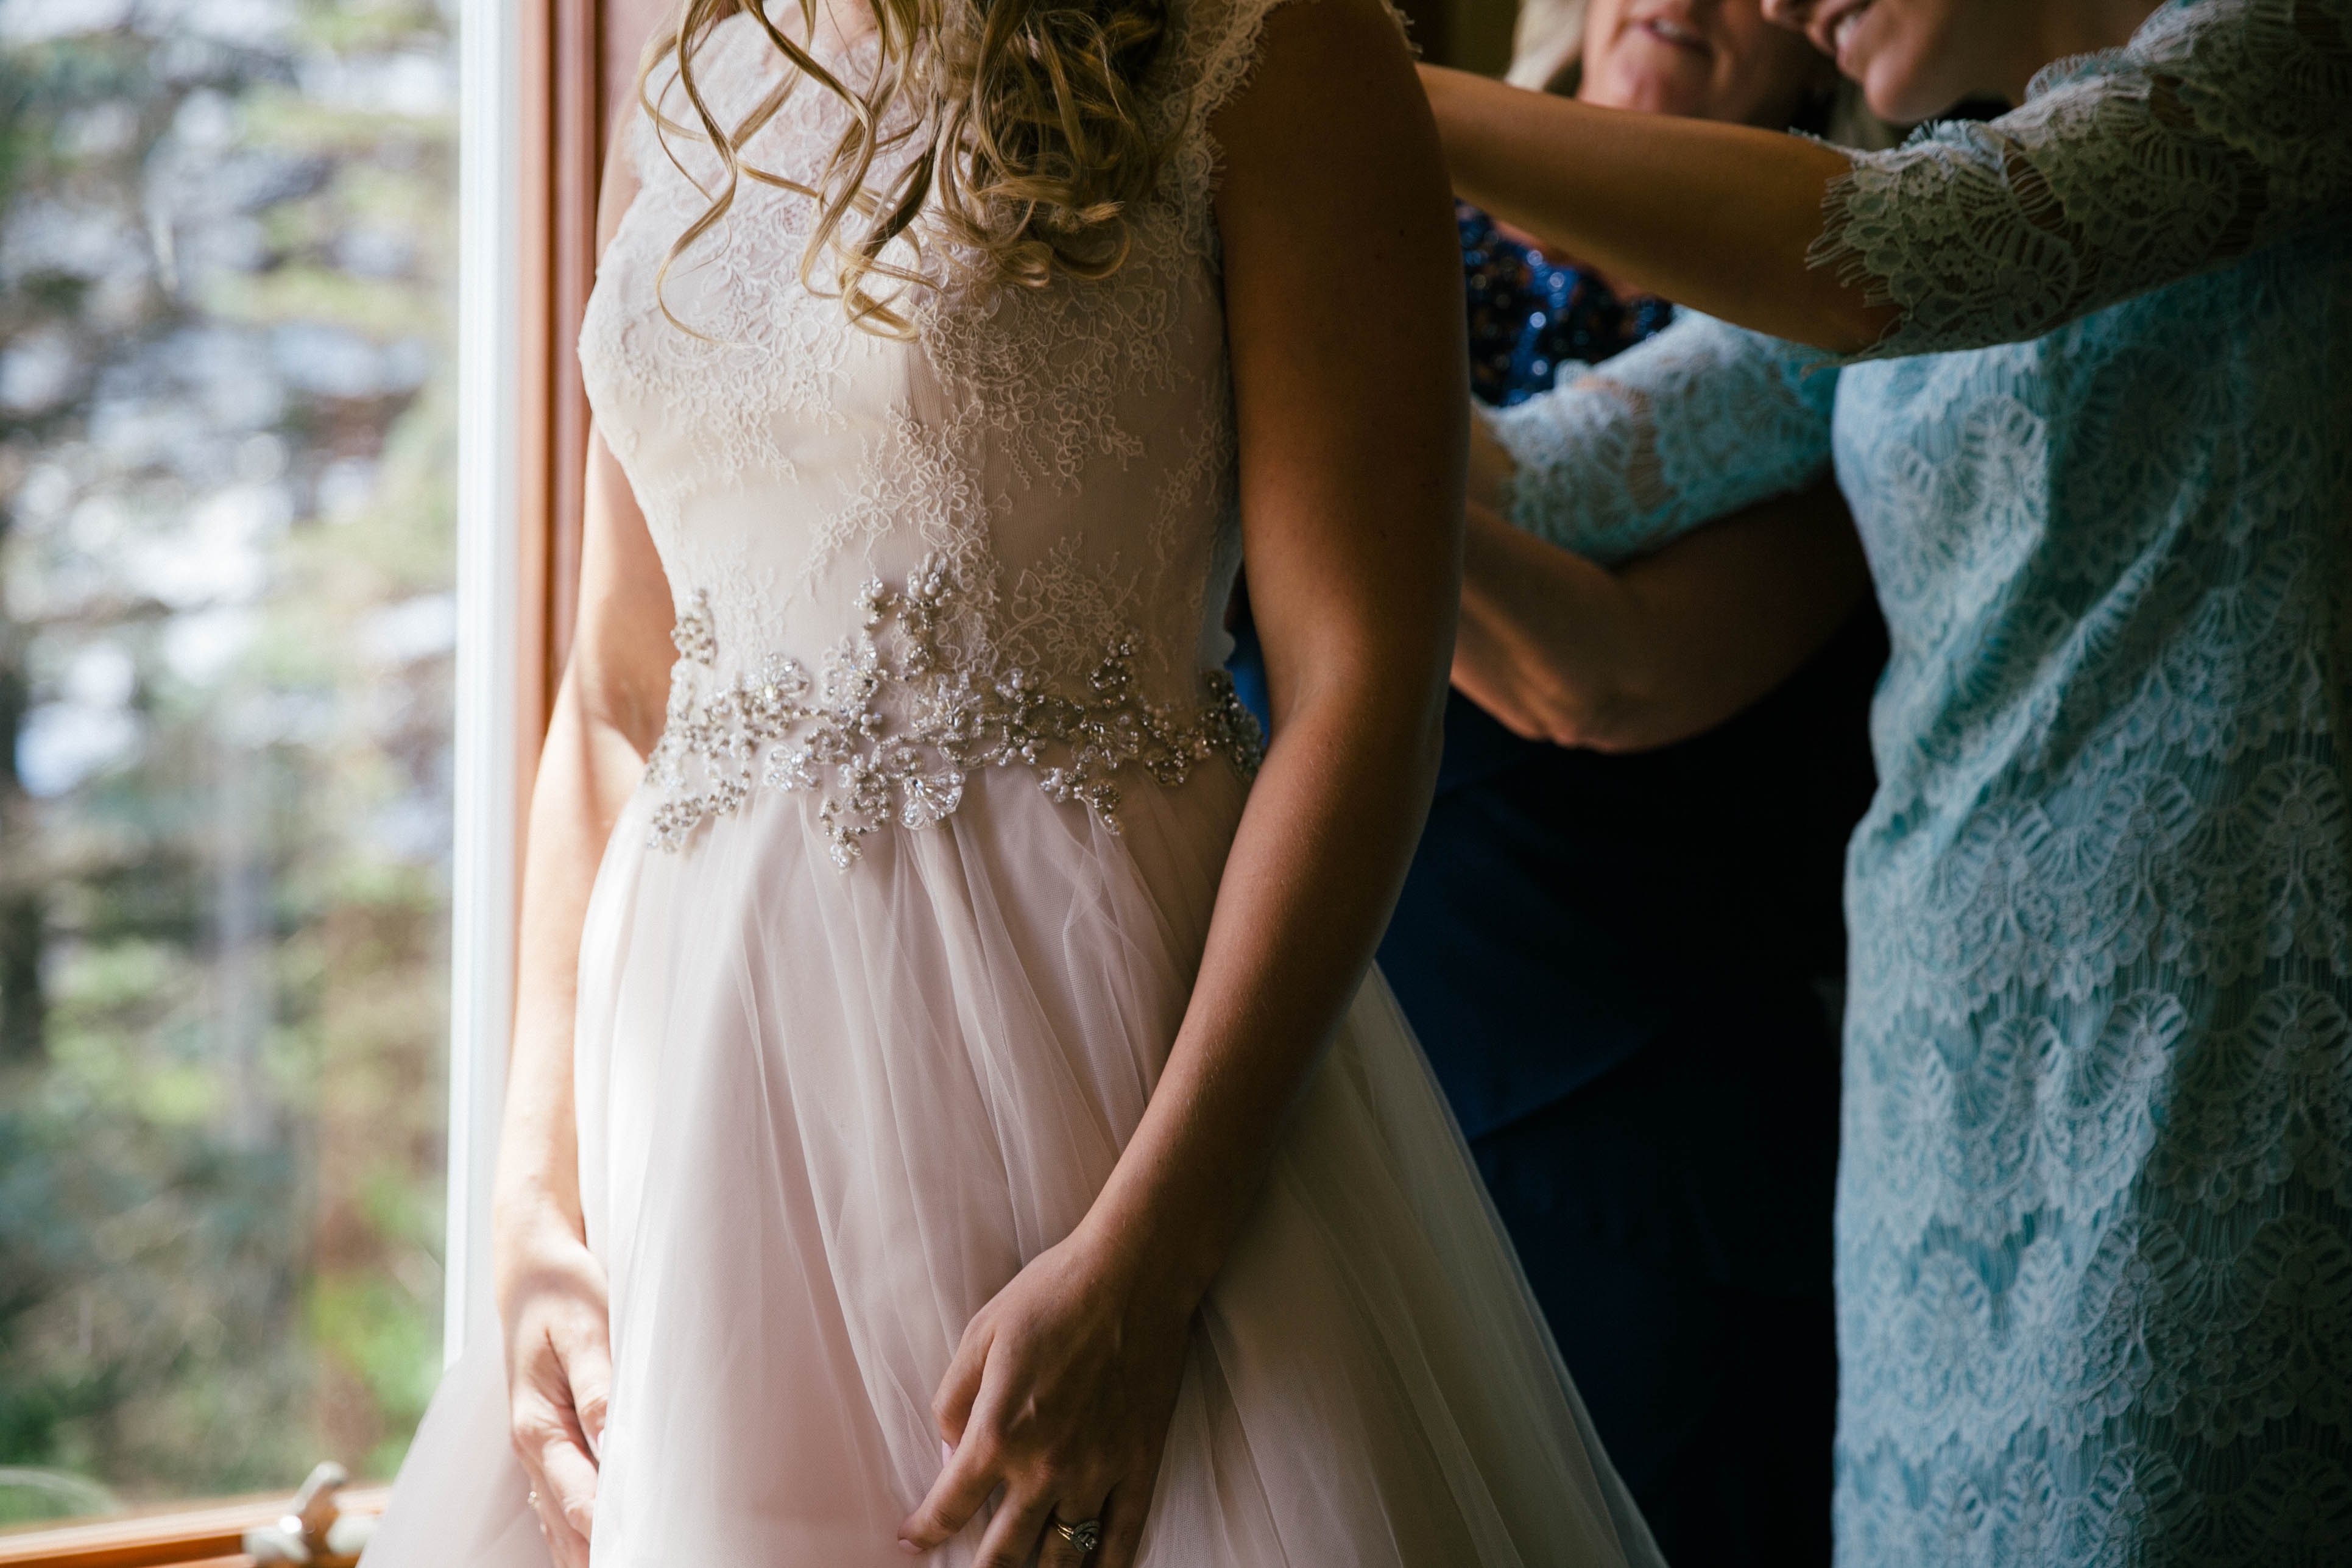 Eine Braut bereitet vor einem Fenster ihr Hochzeitskleid vor.